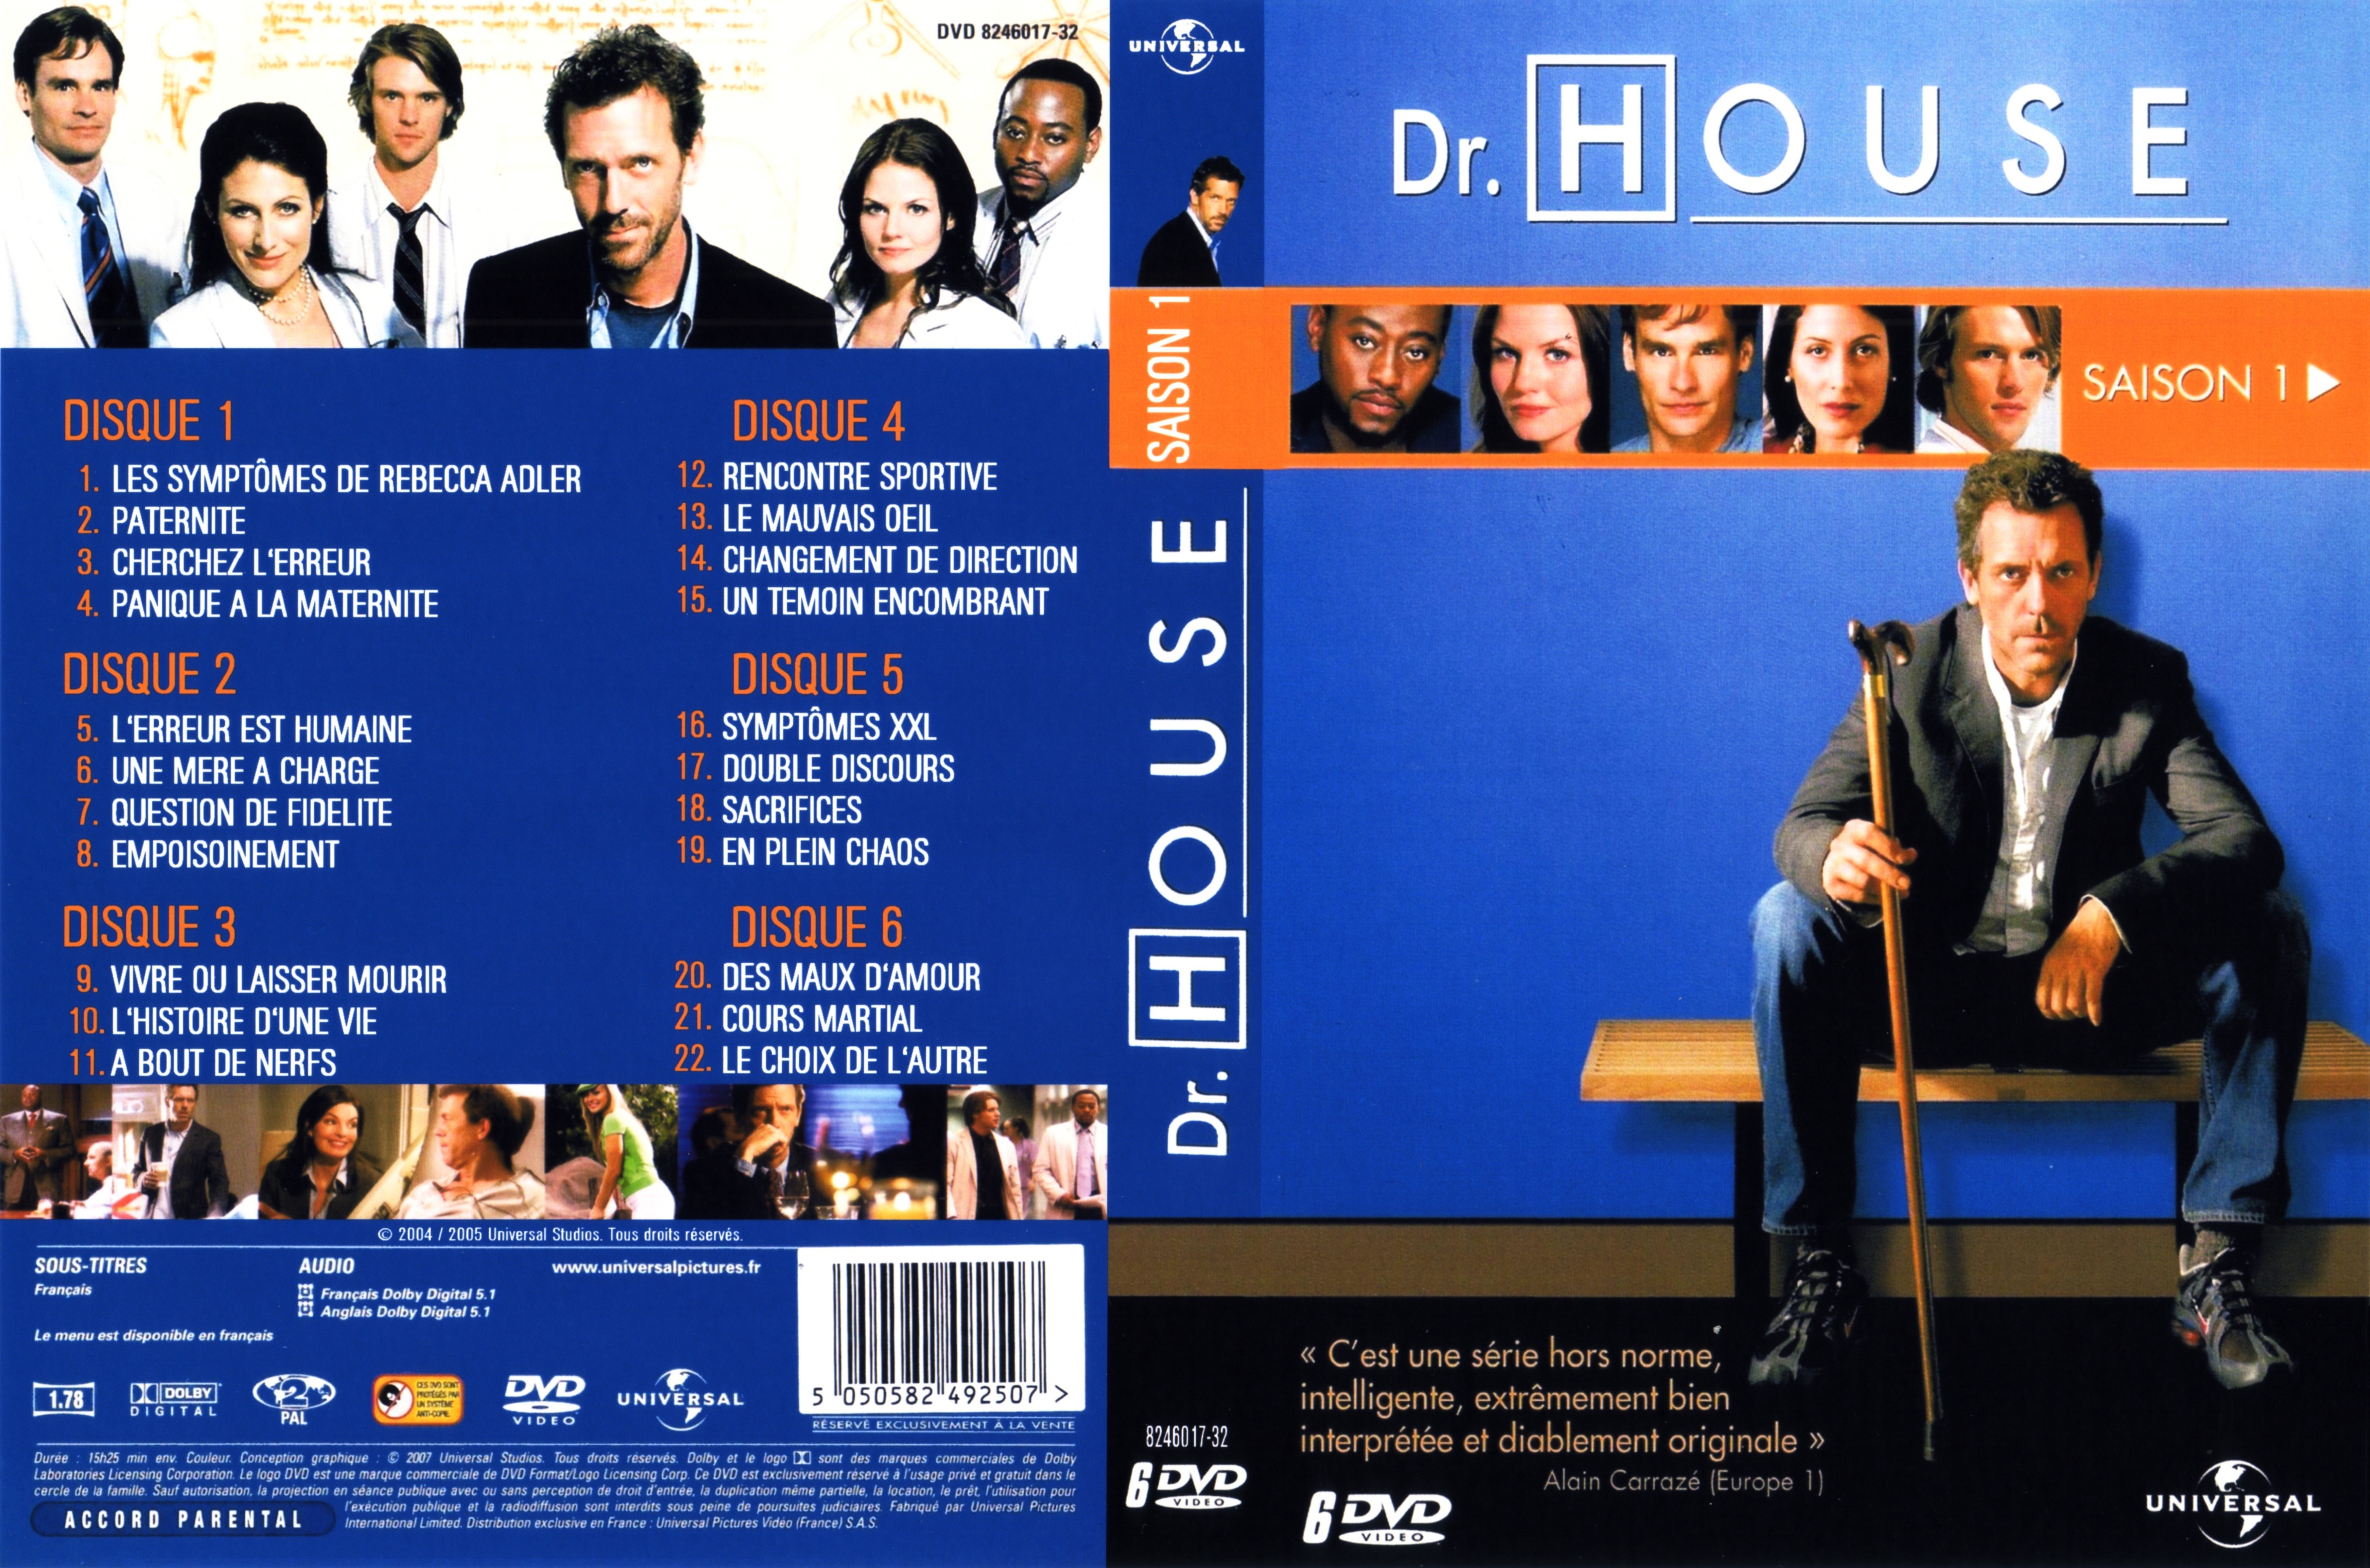 Jaquette DVD Dr House Saison 1 COFFRET